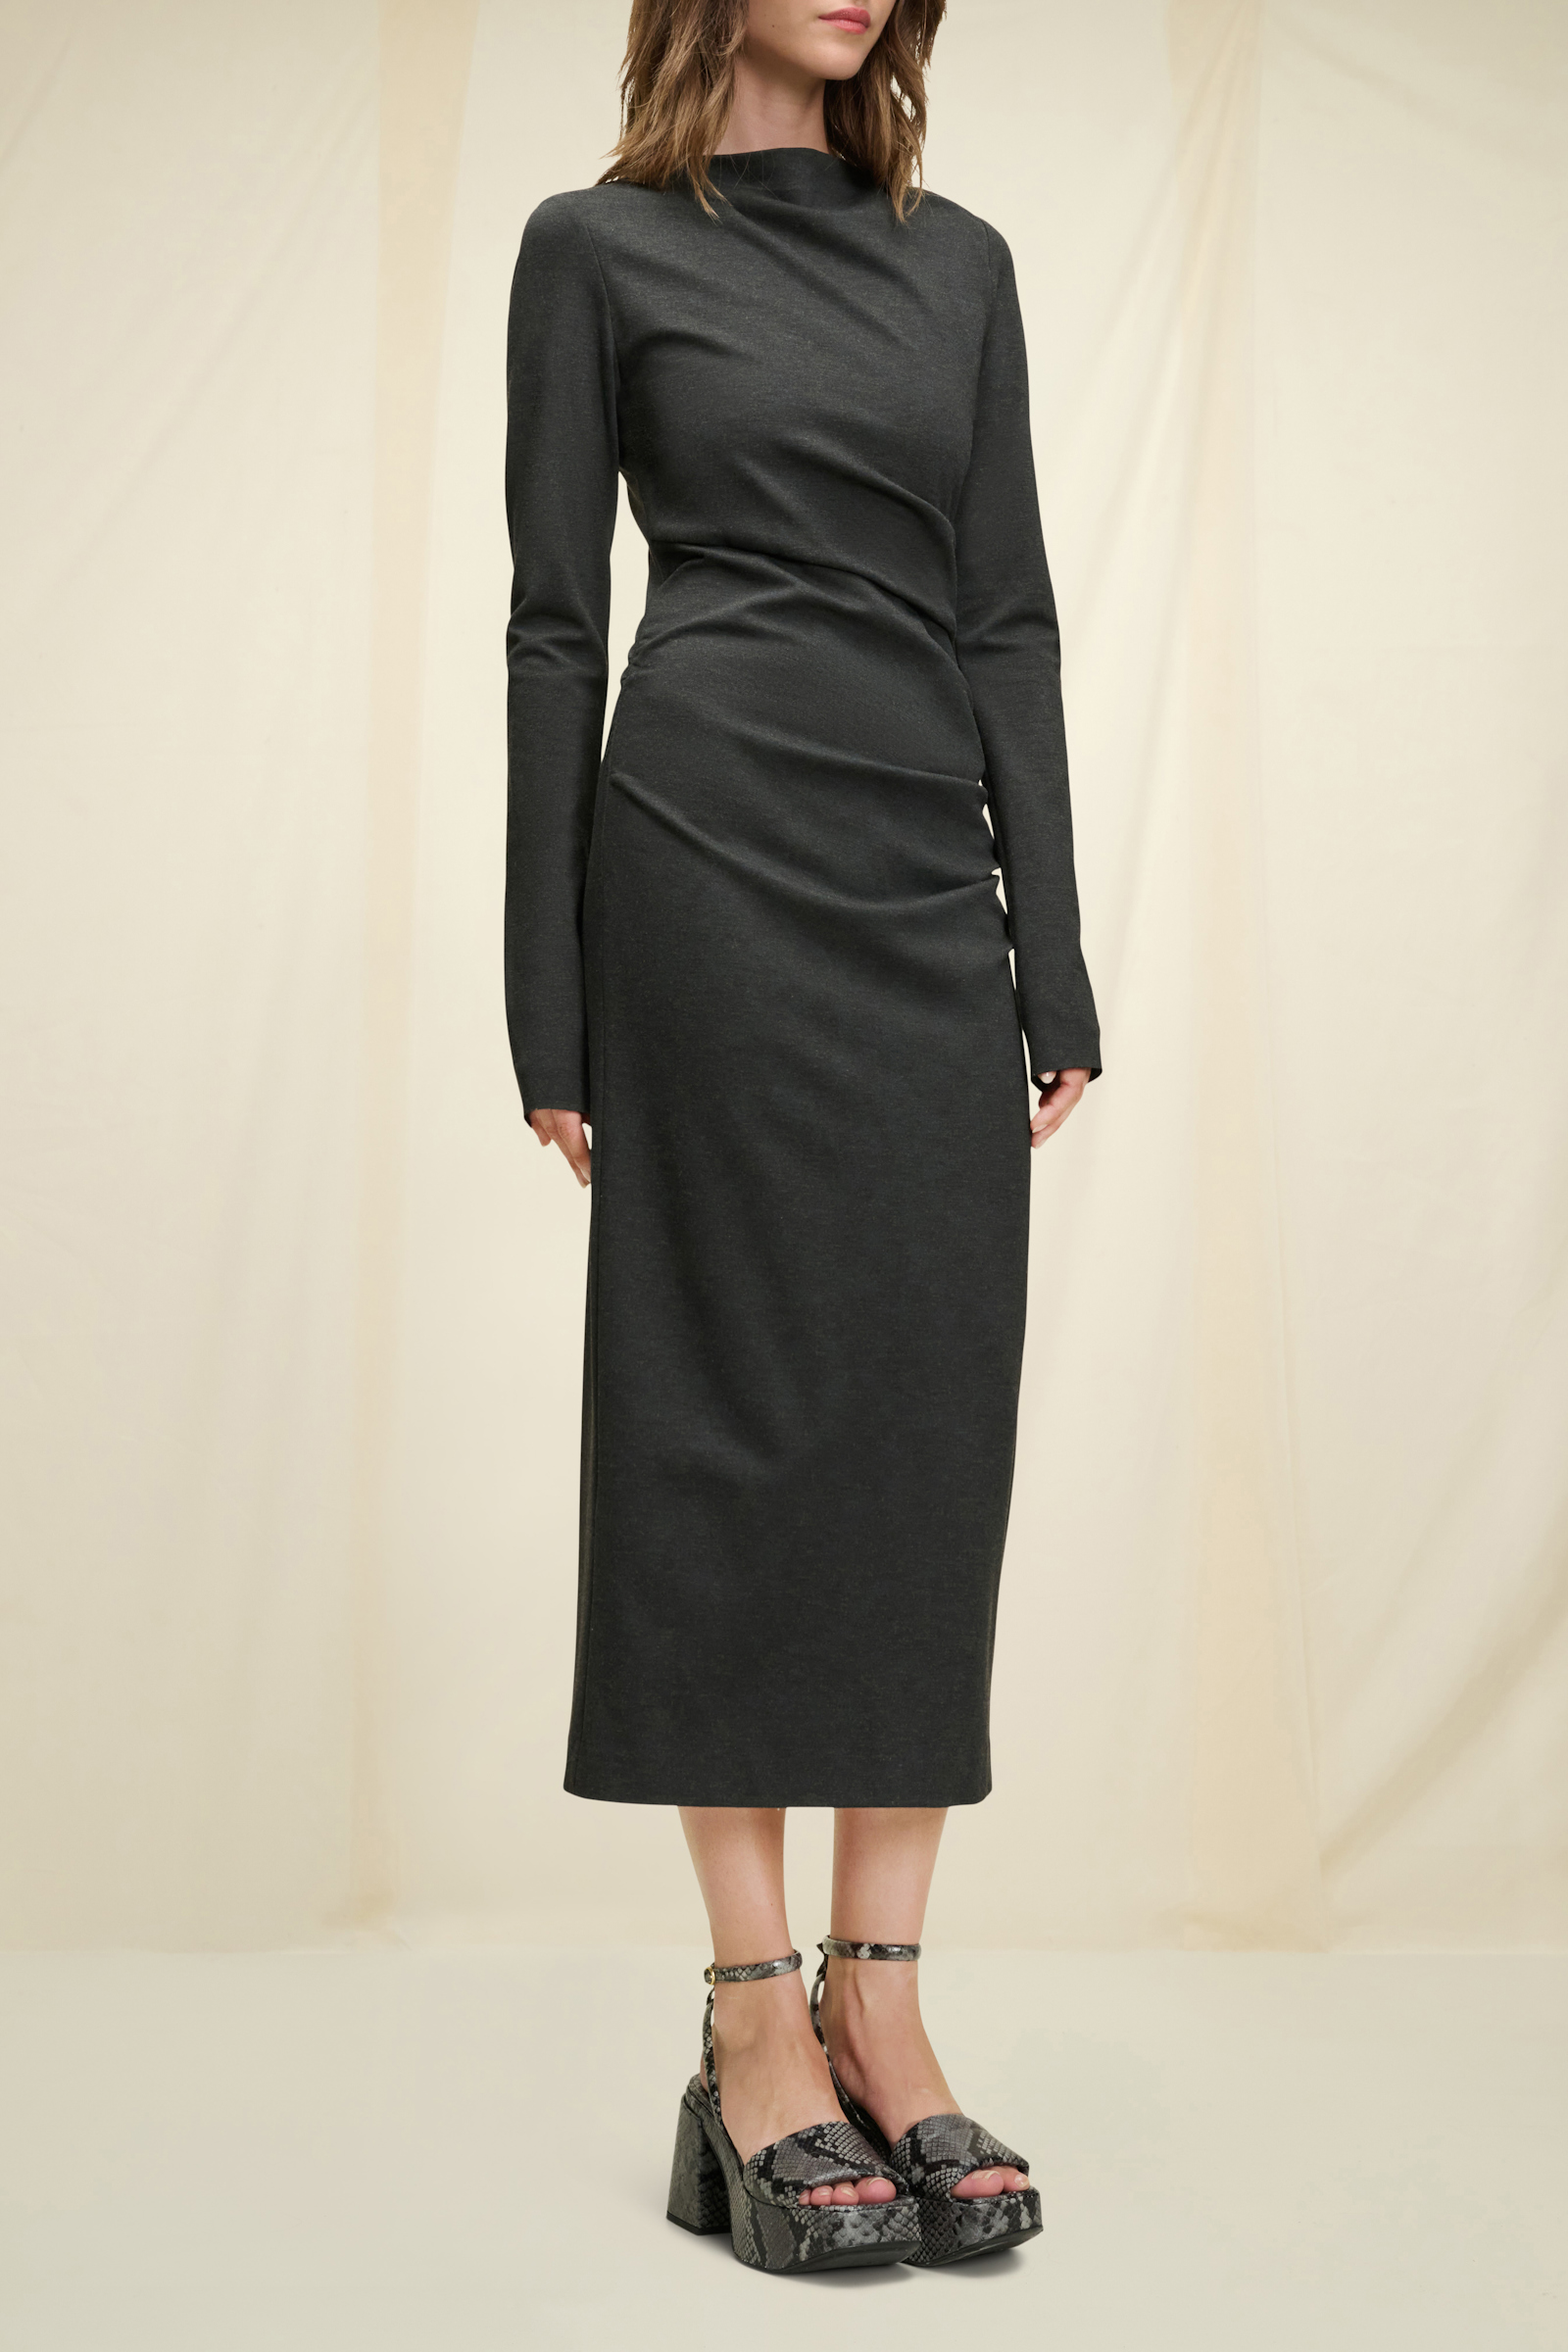 Dorothee Schumacher Punto Milano Kleid mit Drapierungen dark charcoal grey